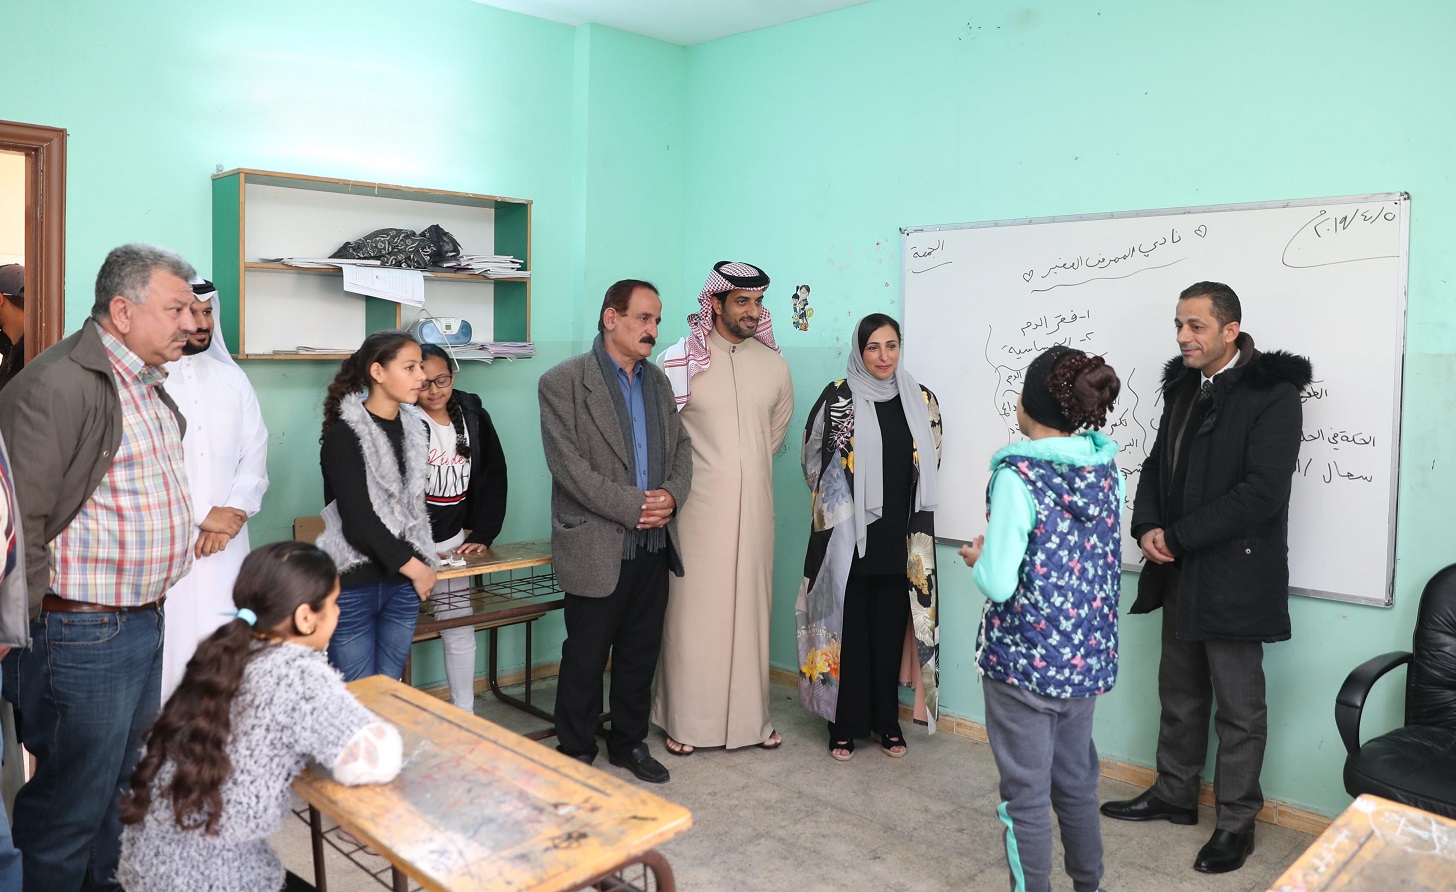 إهداء 700 كتاب إلى 7 مدارس فى الأردن لدعم اللاجئين والنازحين (3)